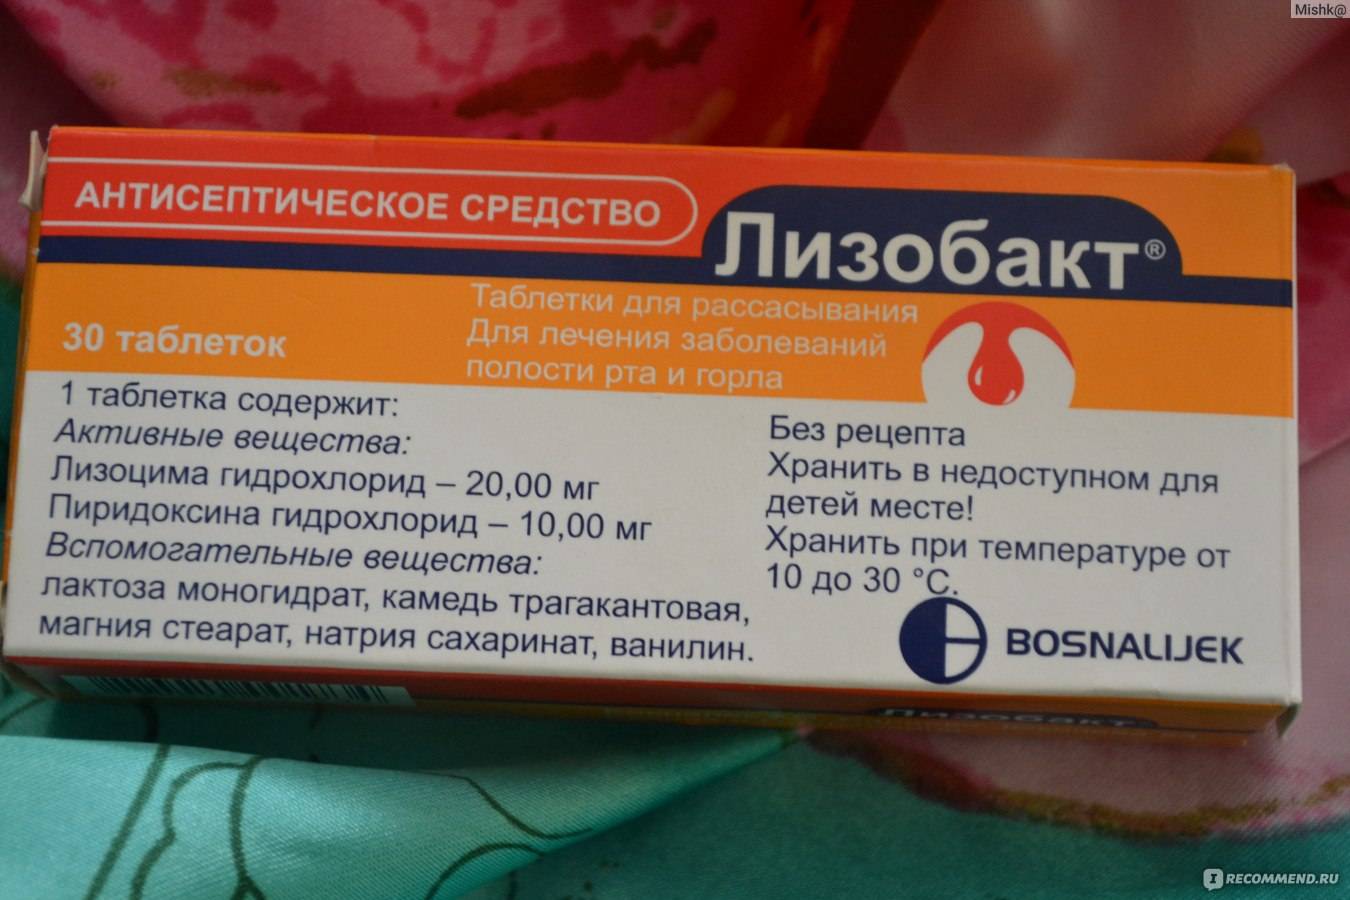 Лизобакт: как правильно принимать препарат местного антисептического действия